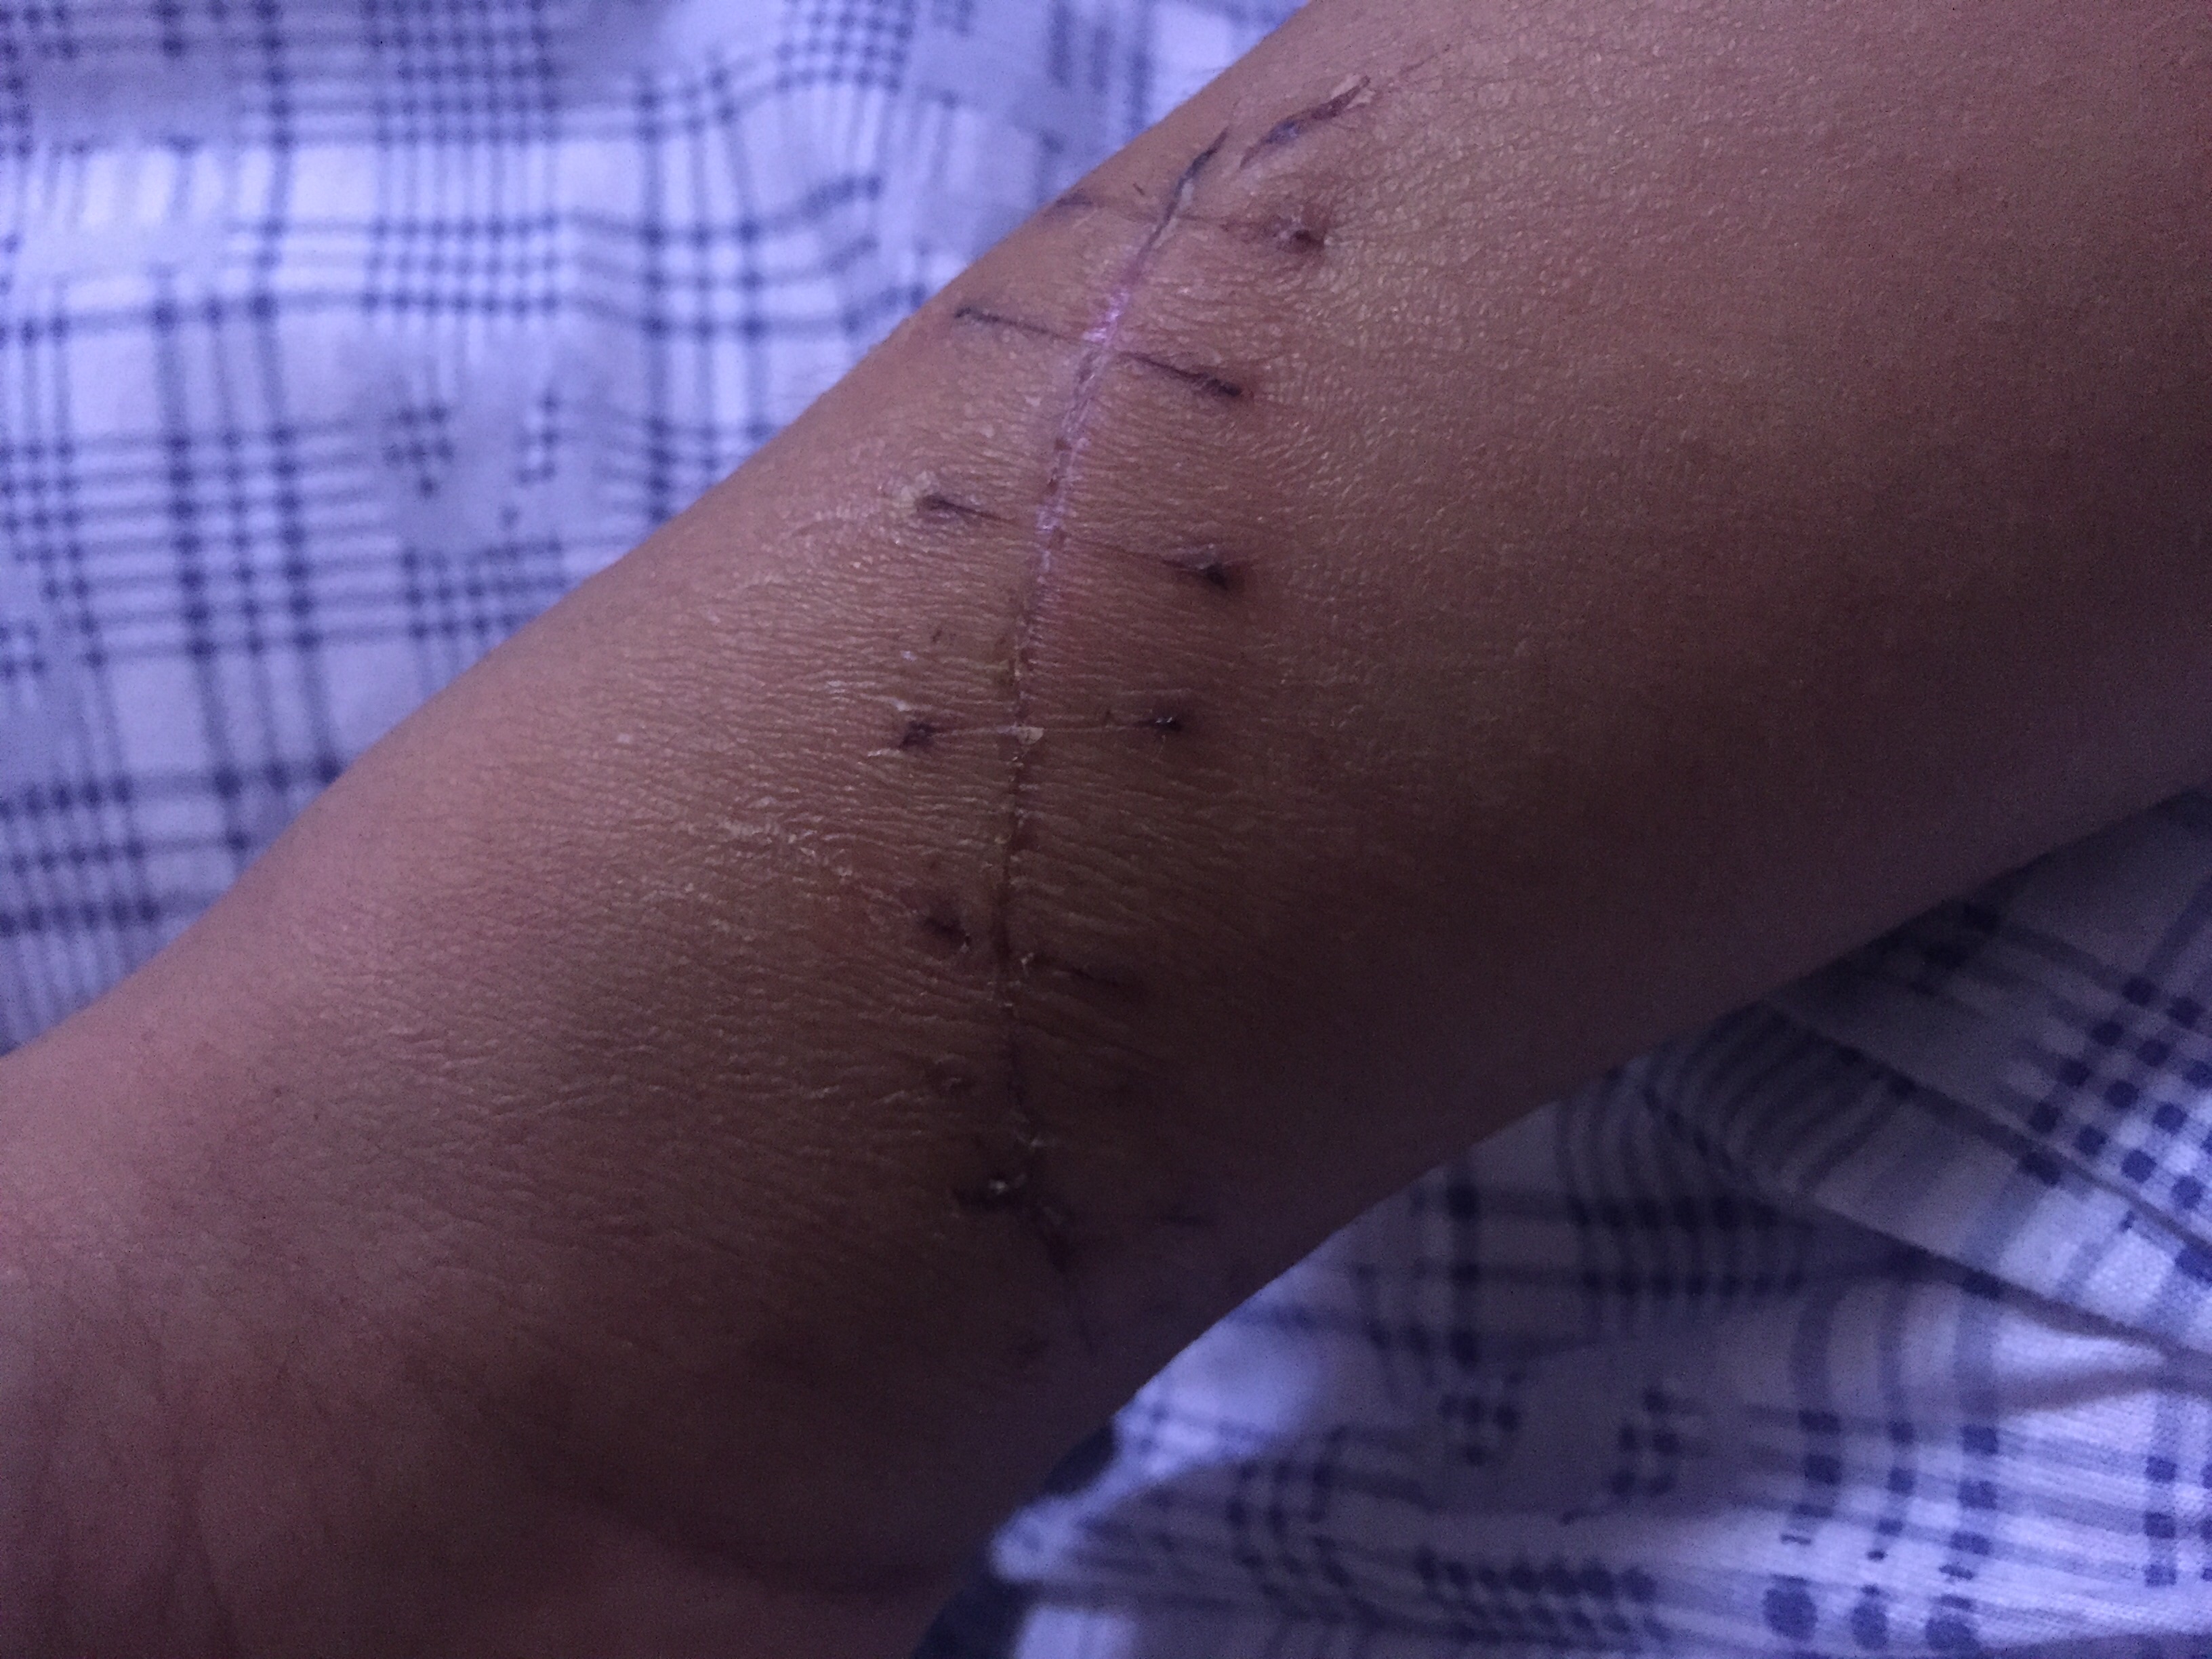 你好医生15天前我的手腕内侧被人砍了一刀伤口9厘米断